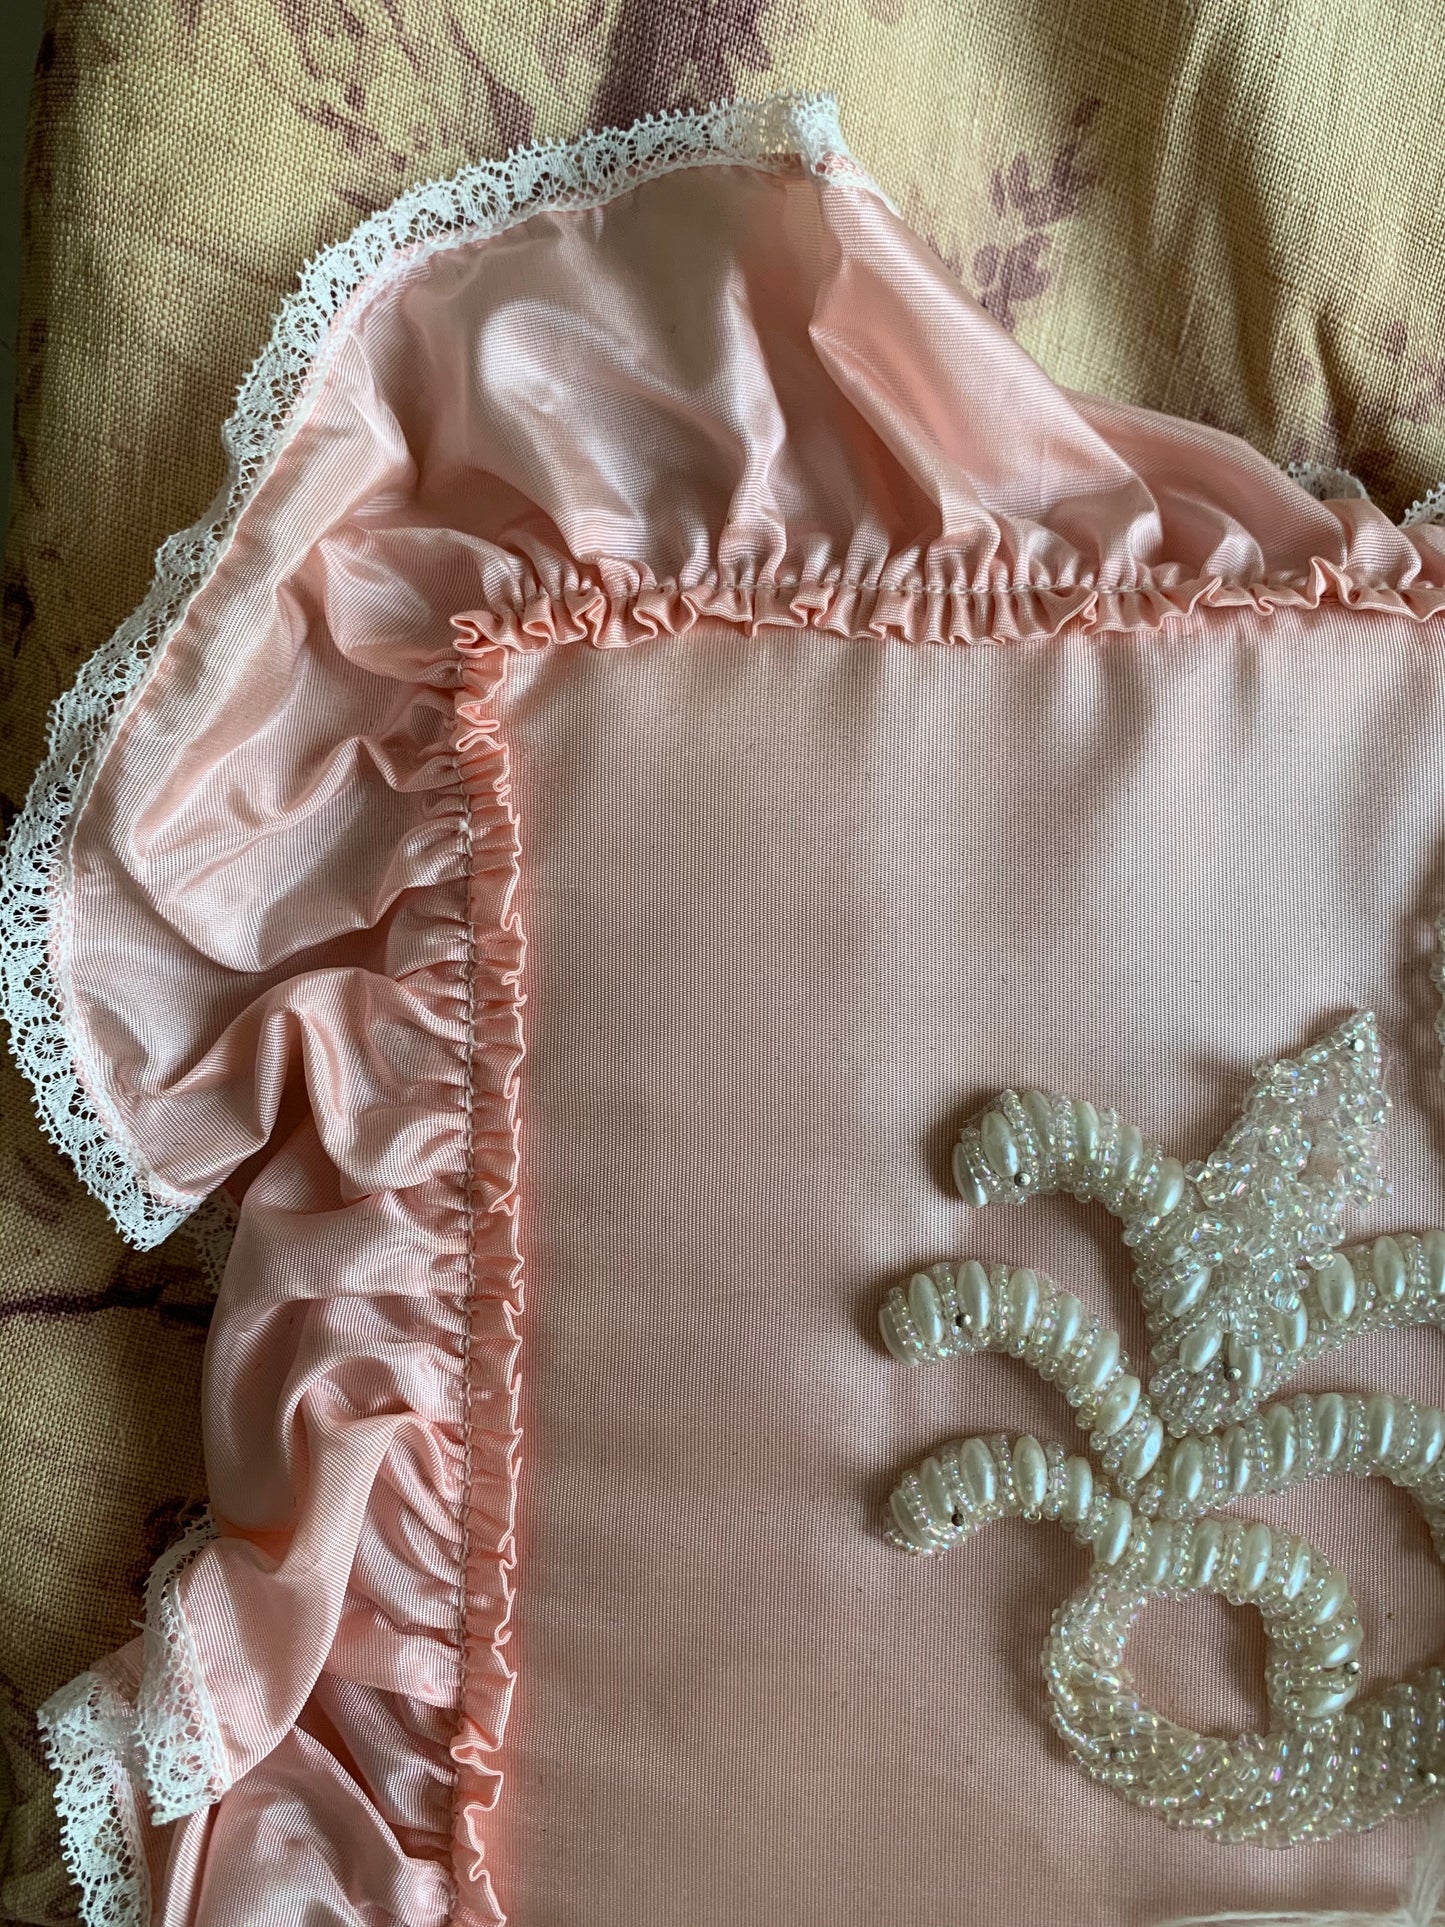 Assembled vintage boudoir doll face pillow